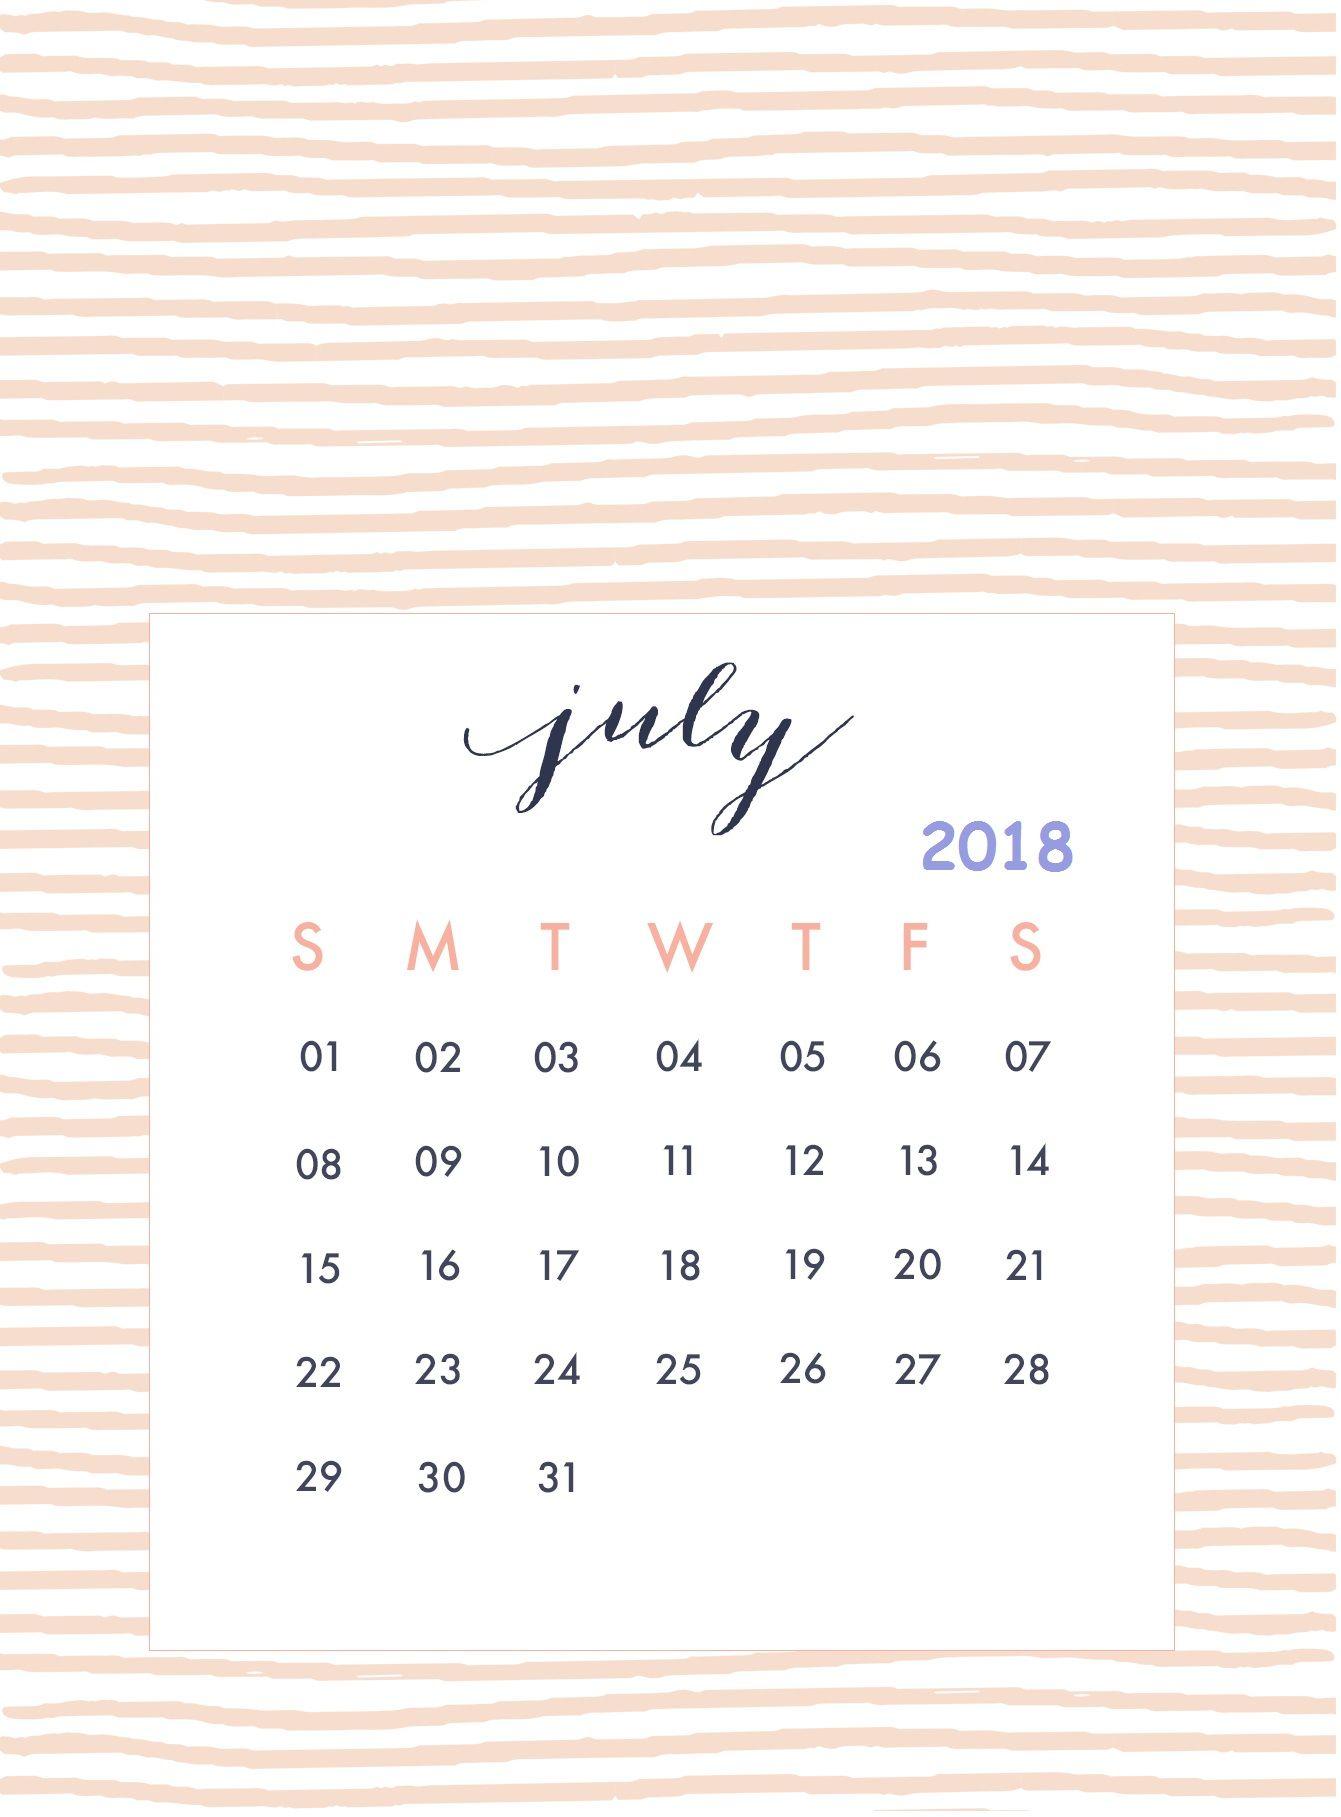 iPhone Calendar Wallpaper